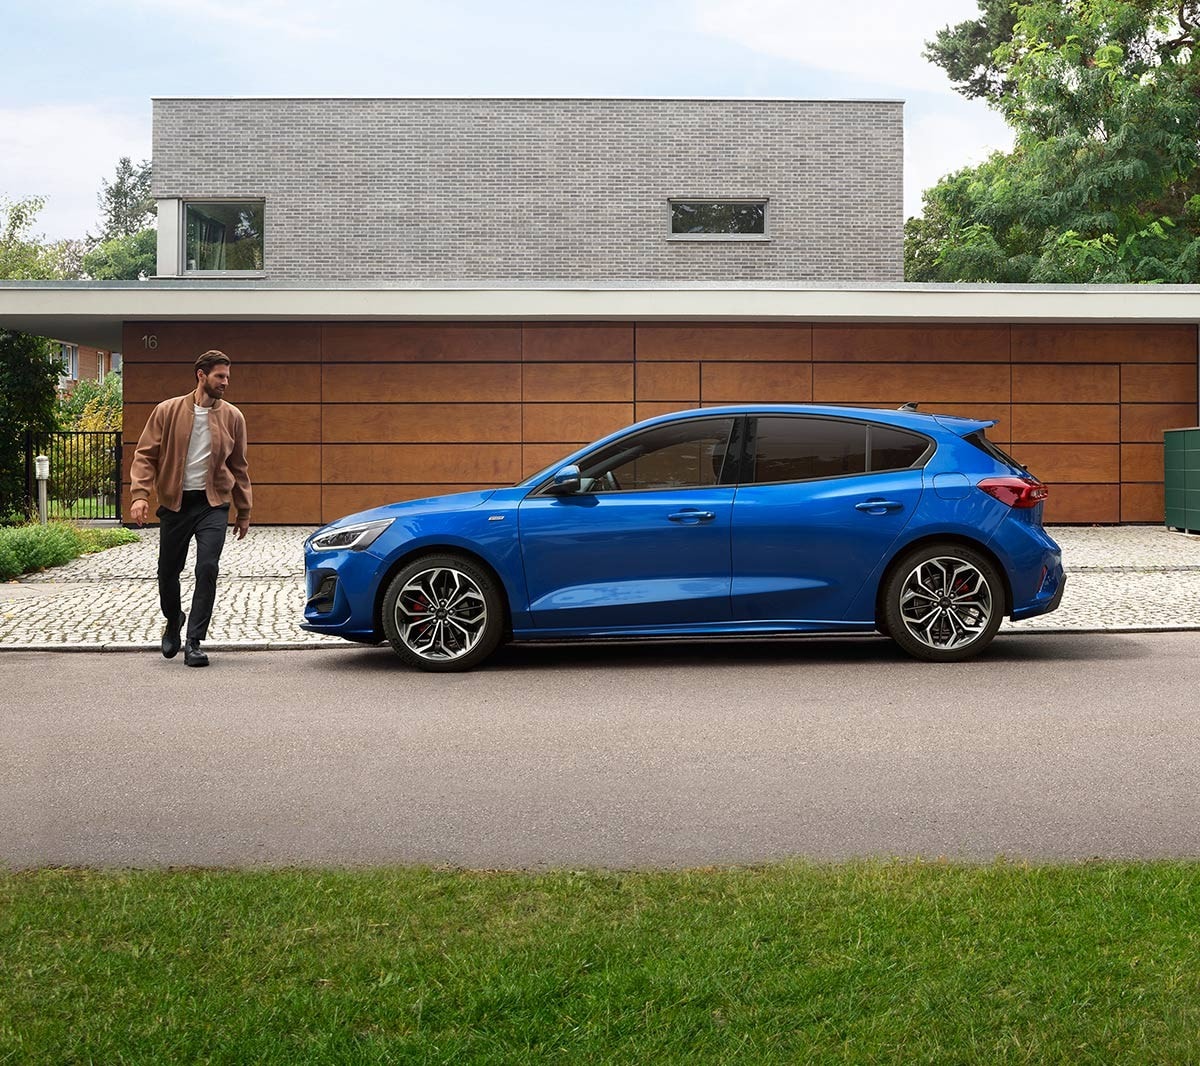 Ford Focus blu. Vista laterale, parcheggiata davanti a un edificio. Un uomo le passa a fianco.